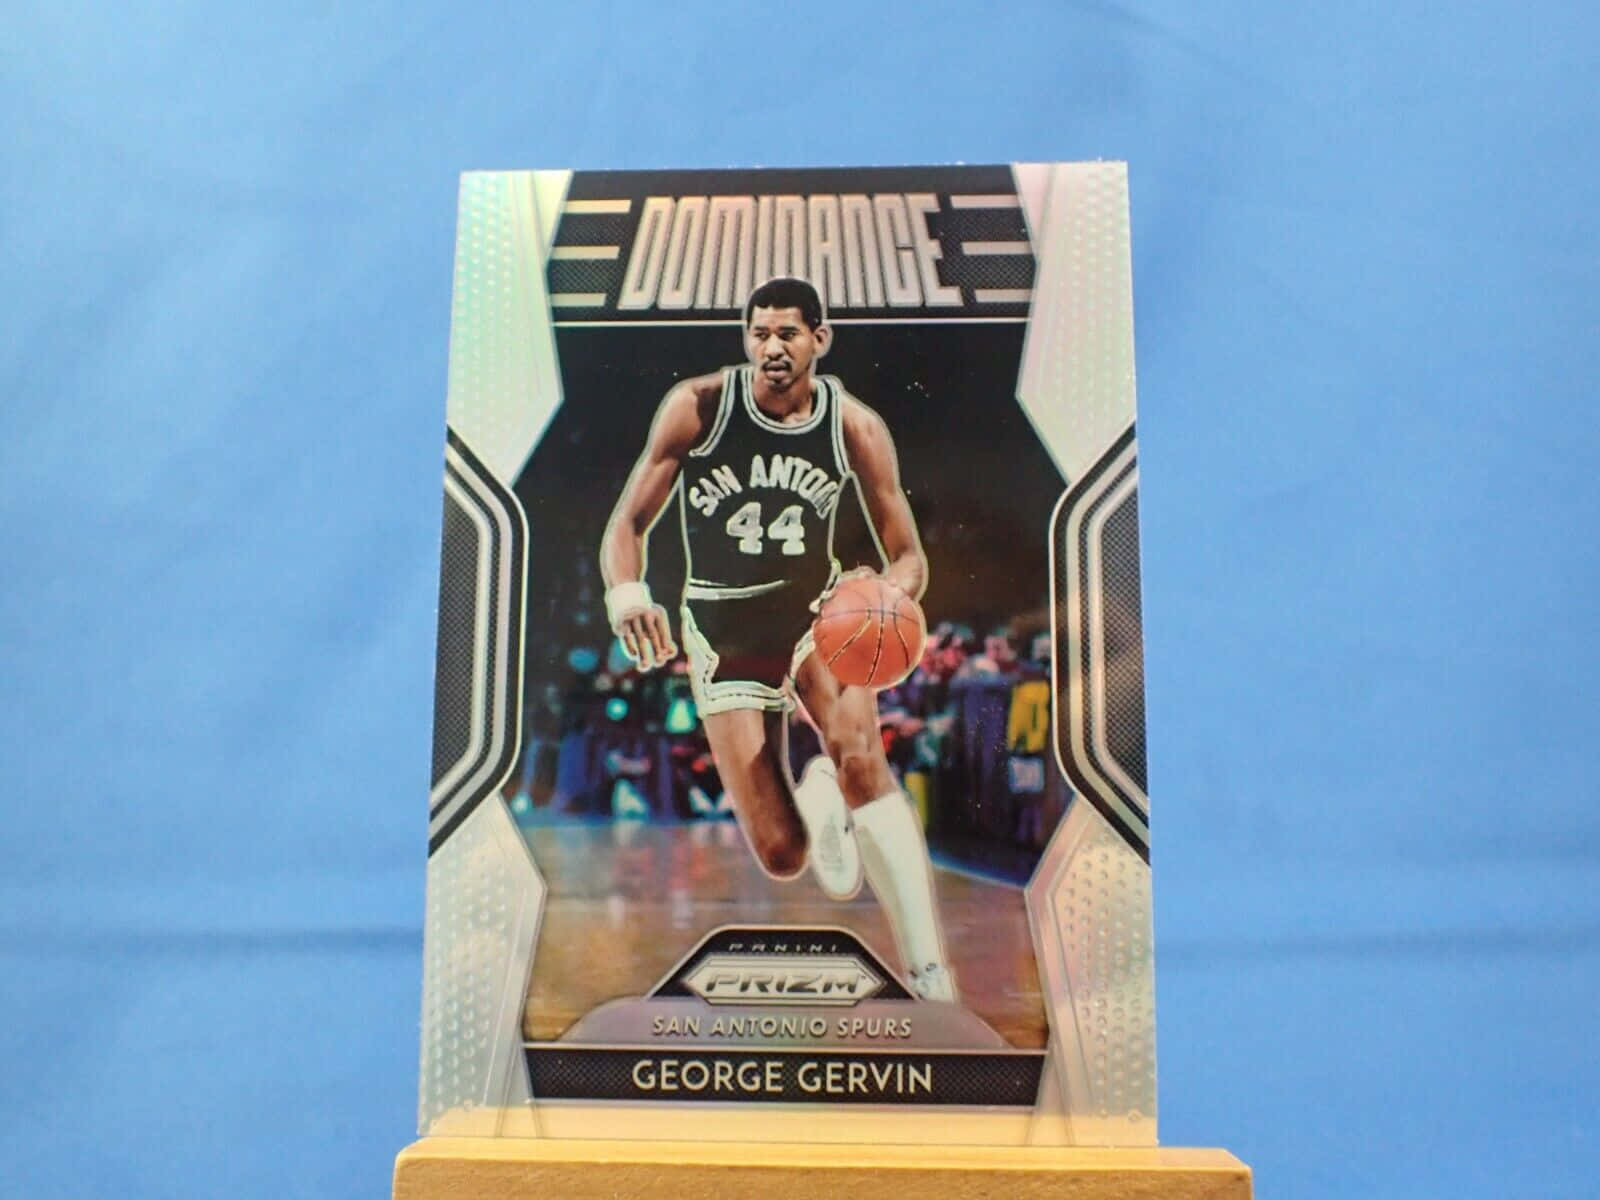 Sammlerkarte: George Gervin Basketball Wallpaper